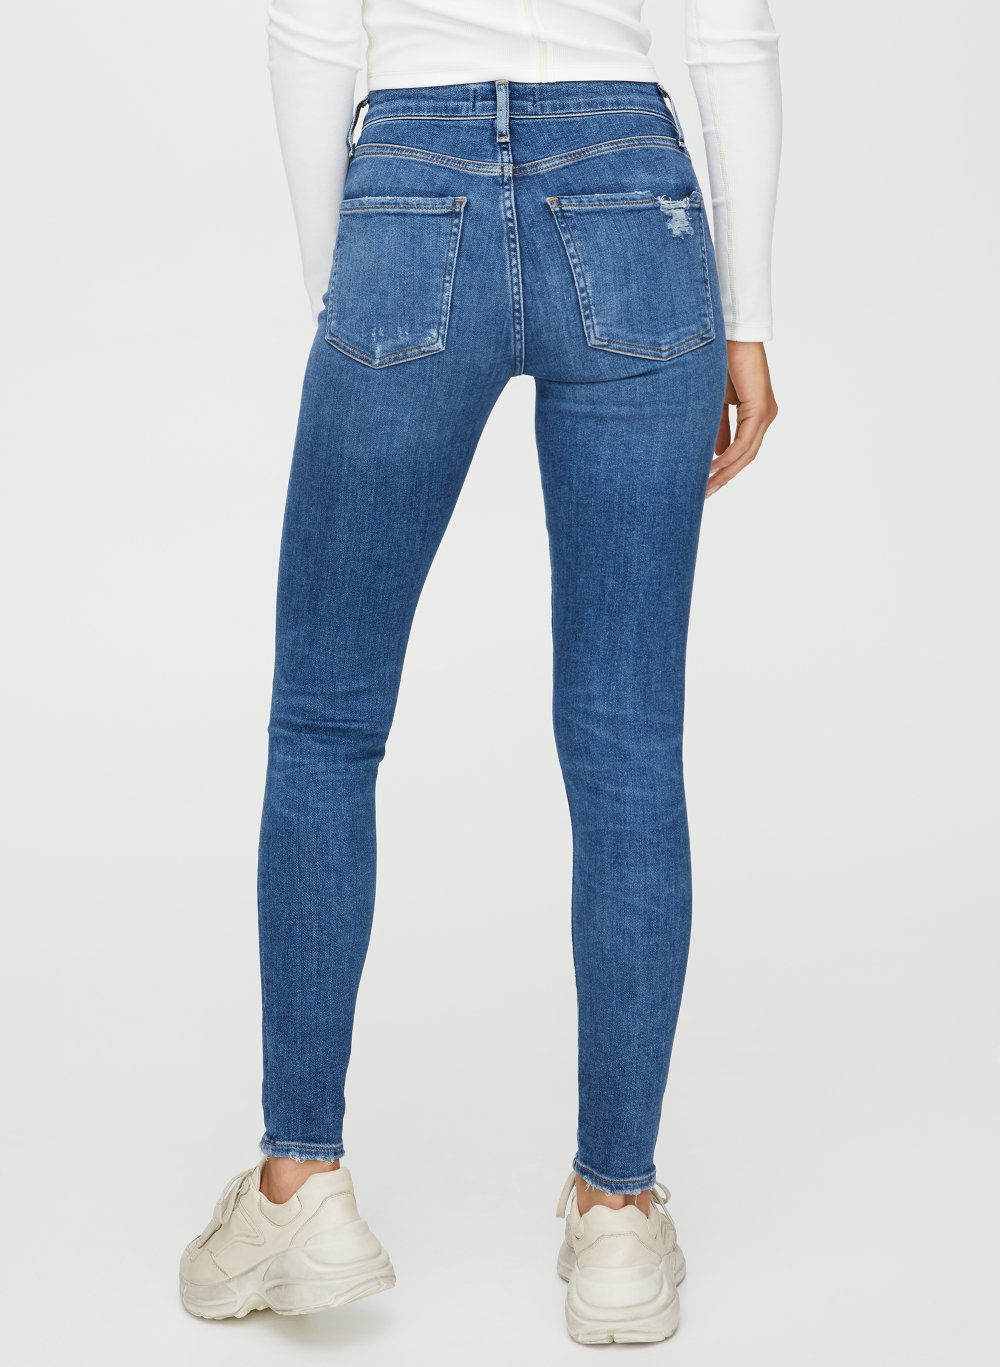 sophie skinny jeans